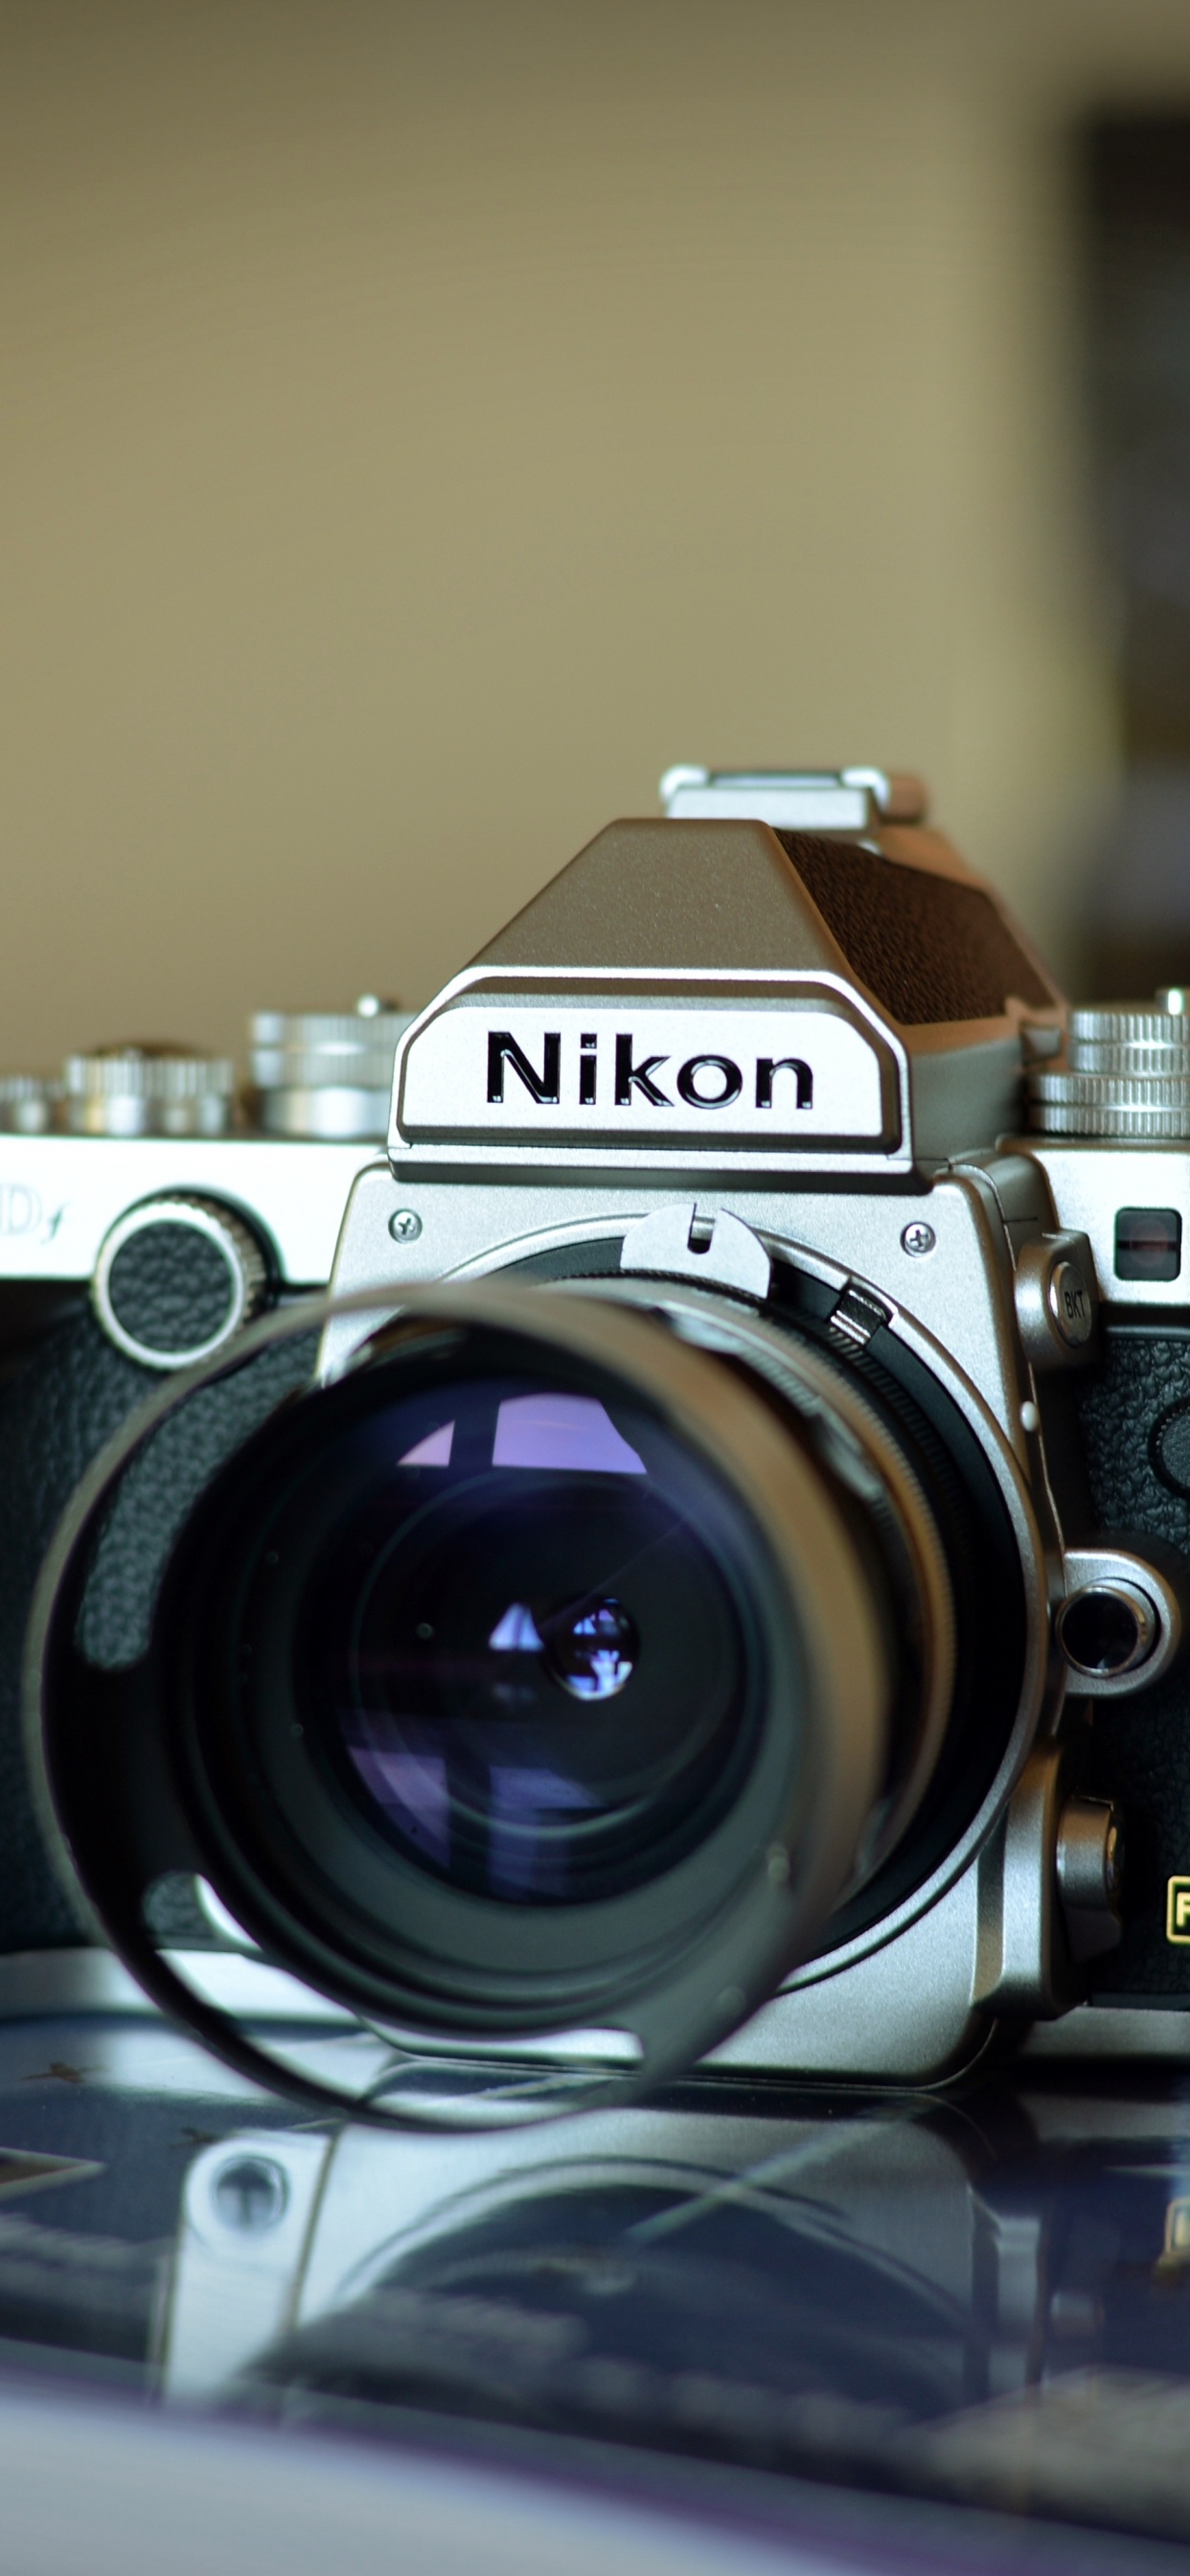 尼康, 光学照相机, 拍摄像头, 摄像机的附件, 数字照相机 壁纸 1242x2688 允许